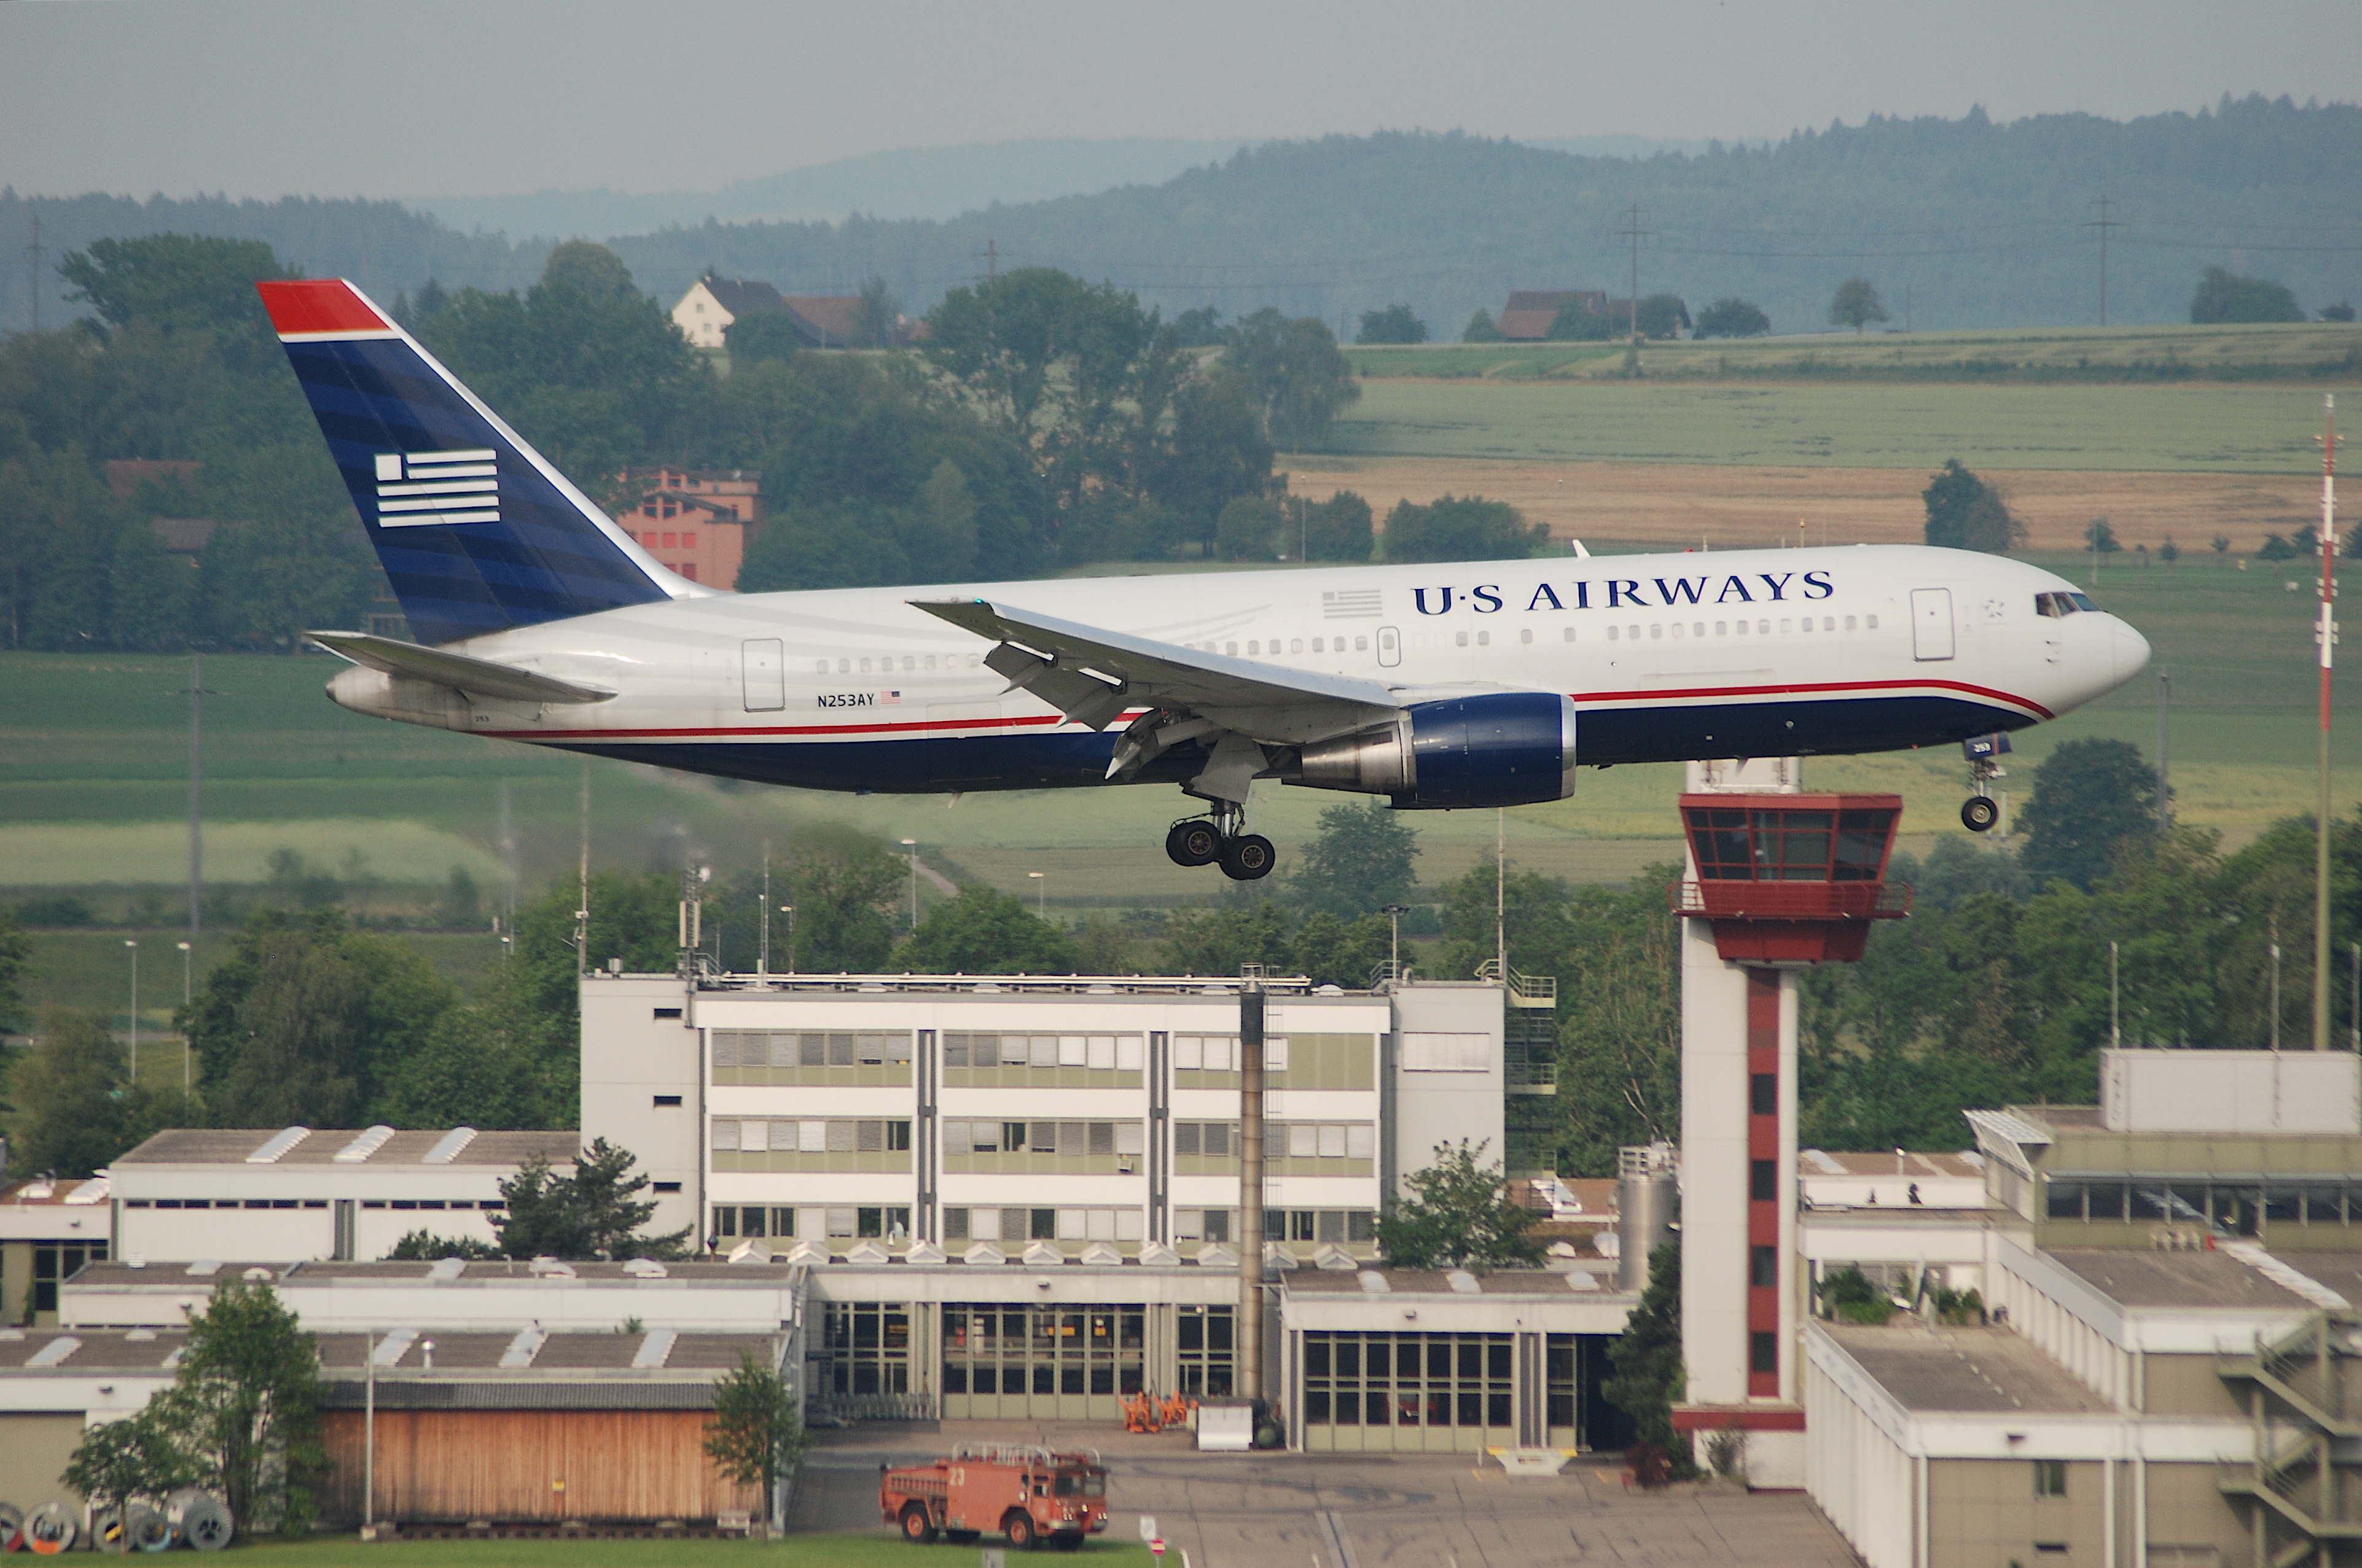 US Airways Boeing 767-200, N253AY@ZRH,09.06.2007-472cf - Flickr - Aero Icarus